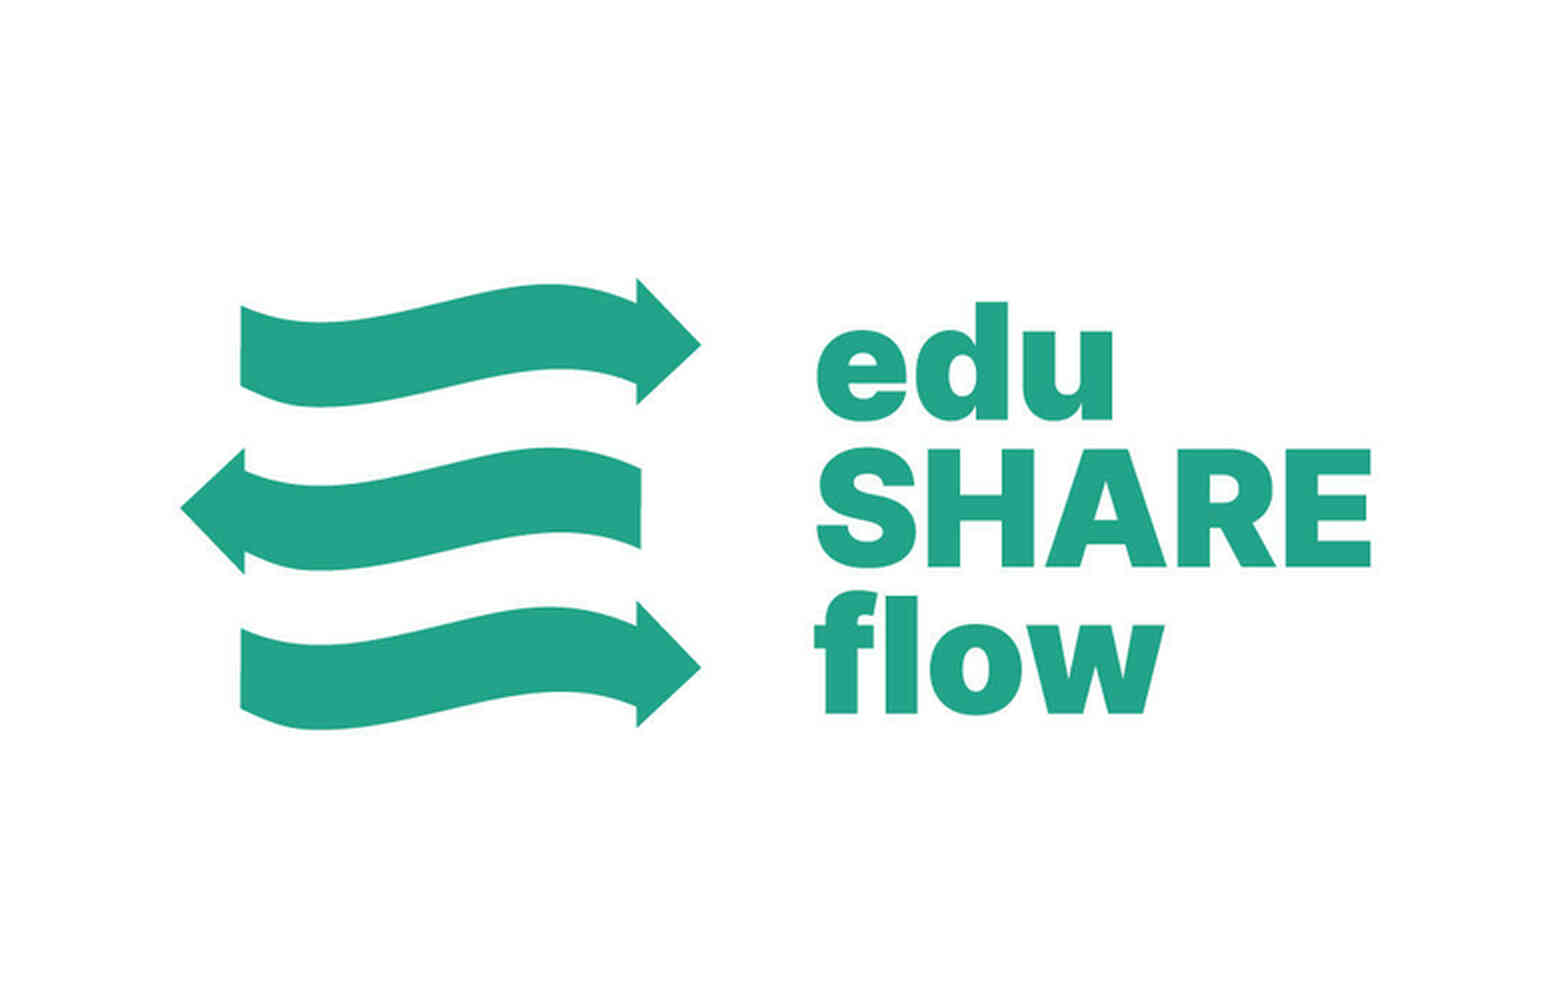 eduSHARE flow